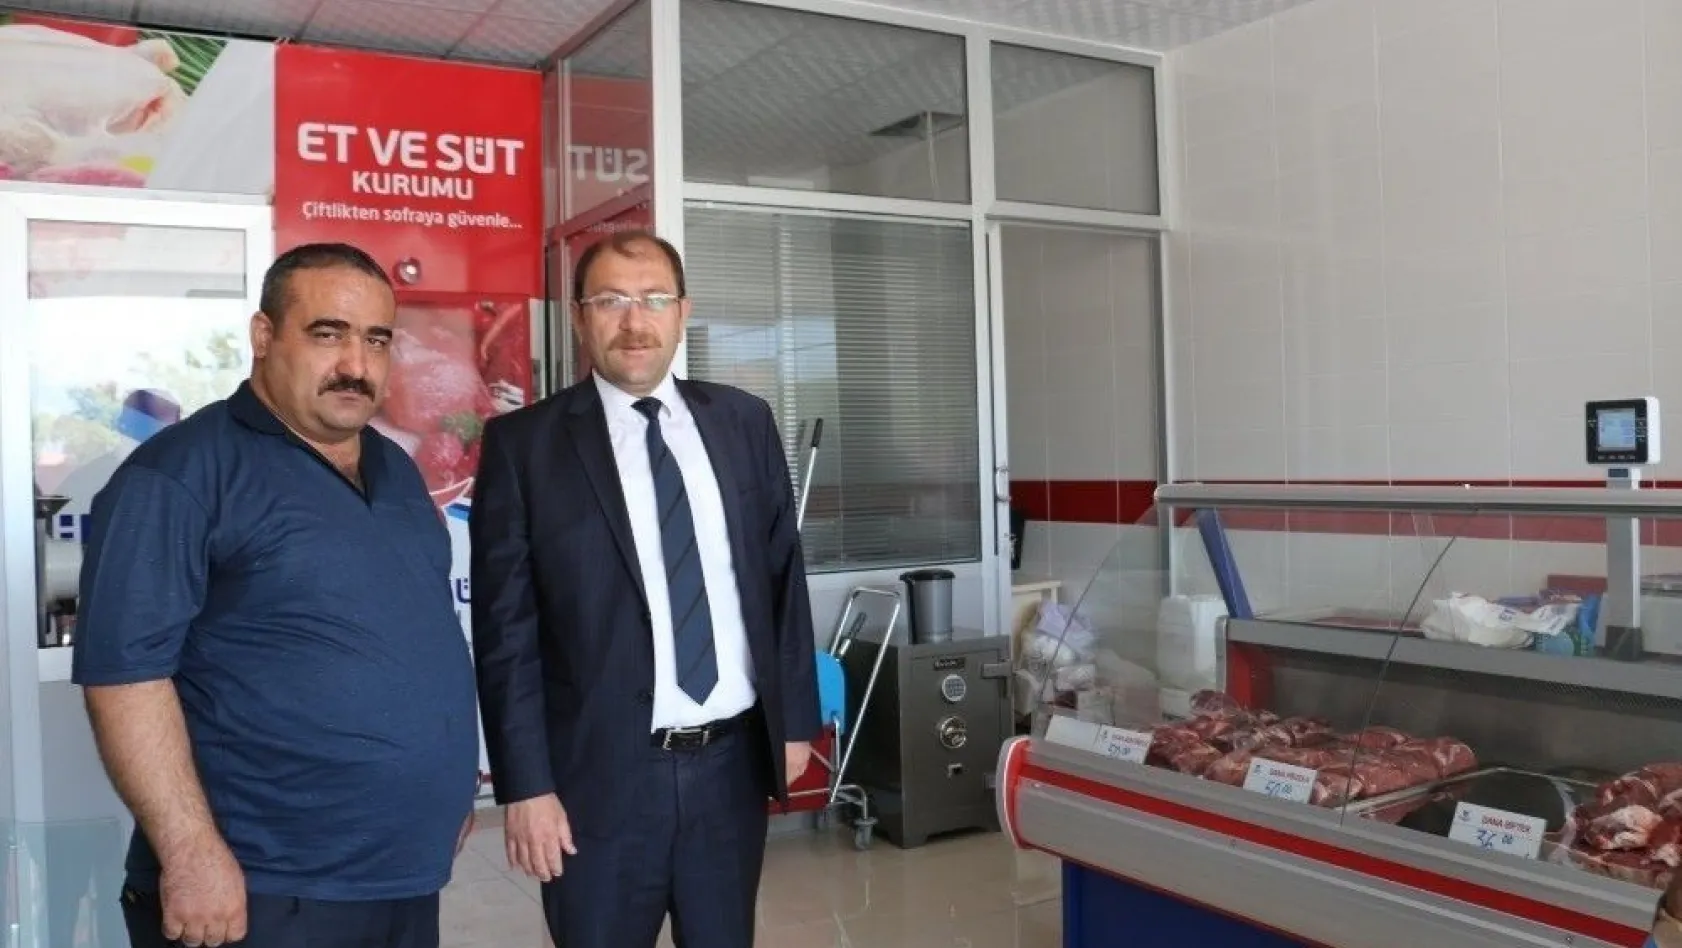 Erzincan'da Et ve Süt Kurumunun satış mağazası açıldı
